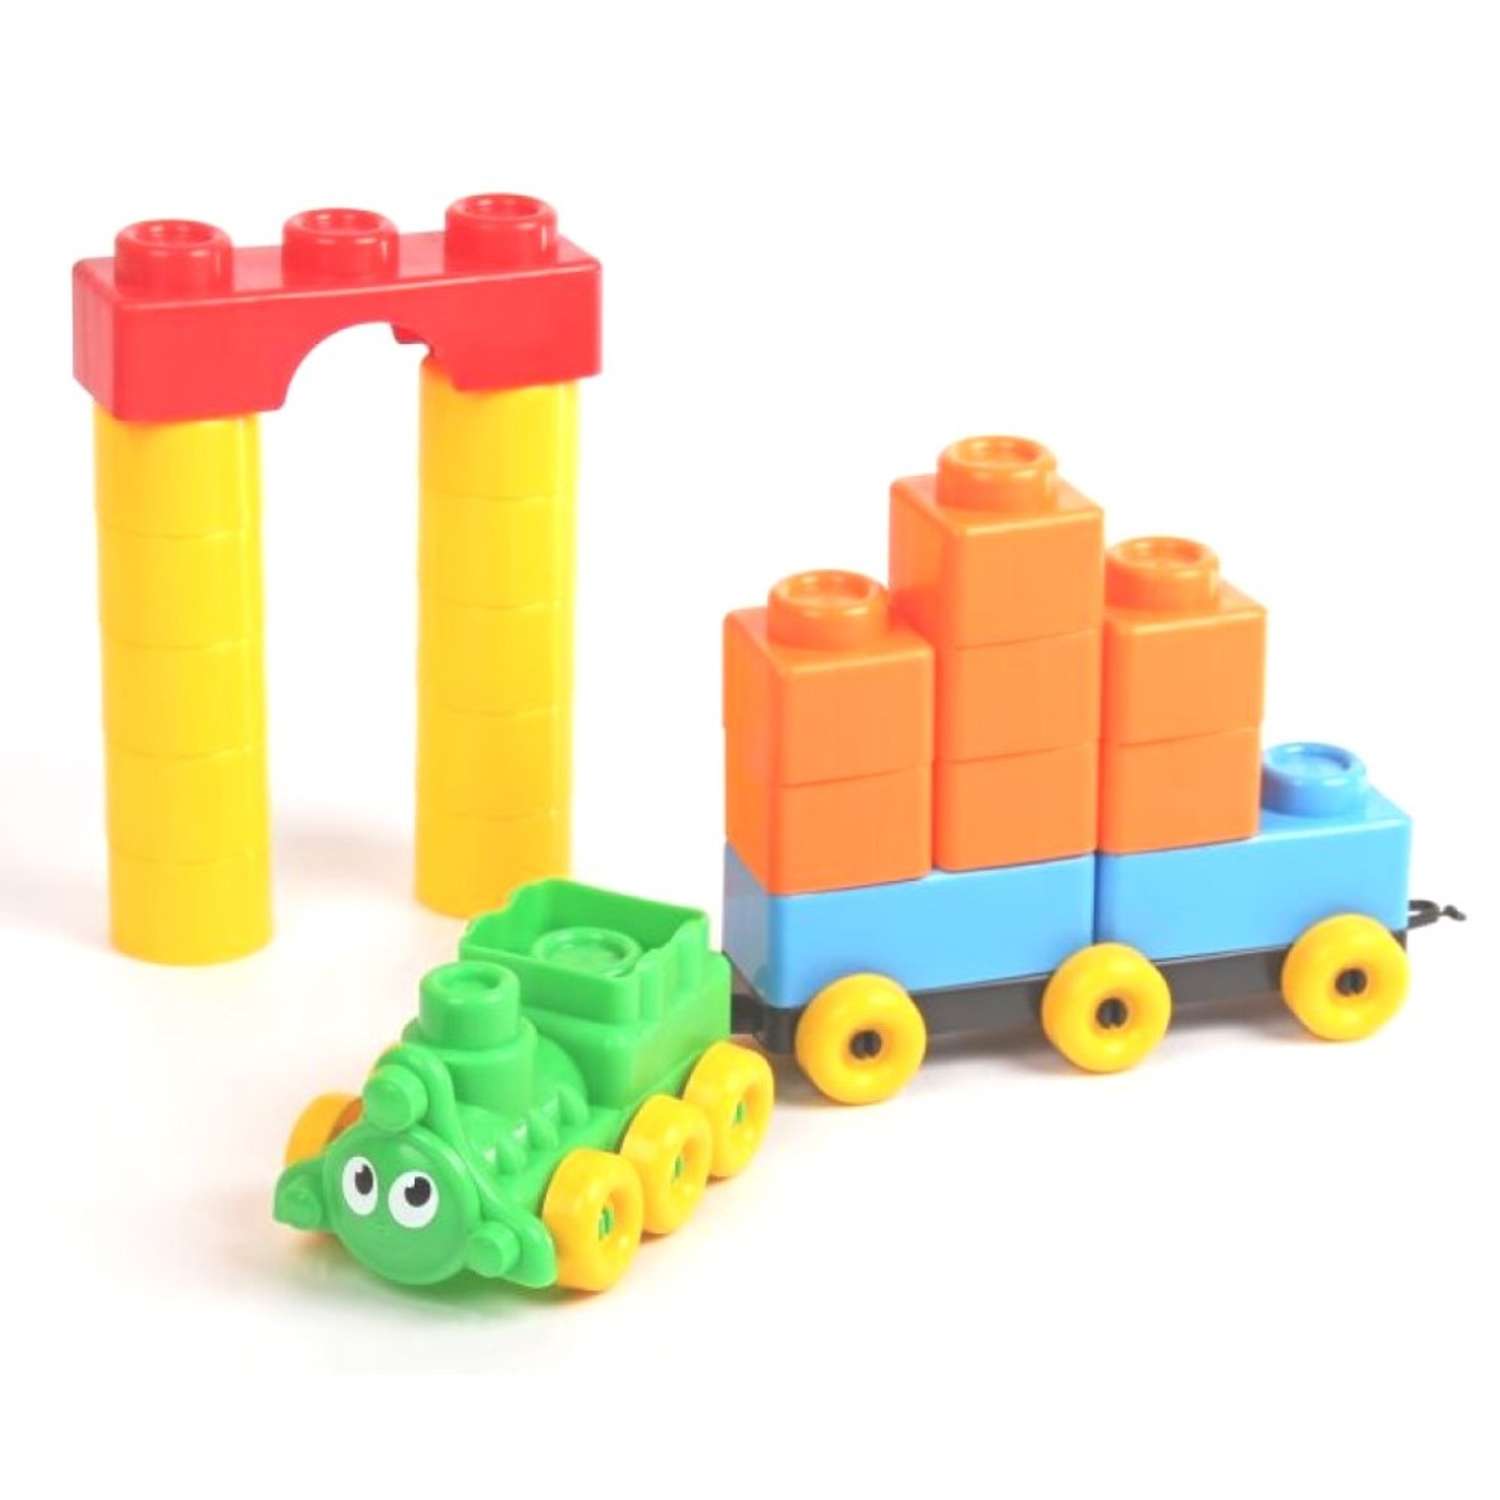 Развивающие игрушки БИПЛАНТ для малышей Конструктор Кноп-Кнопыч 114 деталей + Сортер Кубик логический малый - фото 7